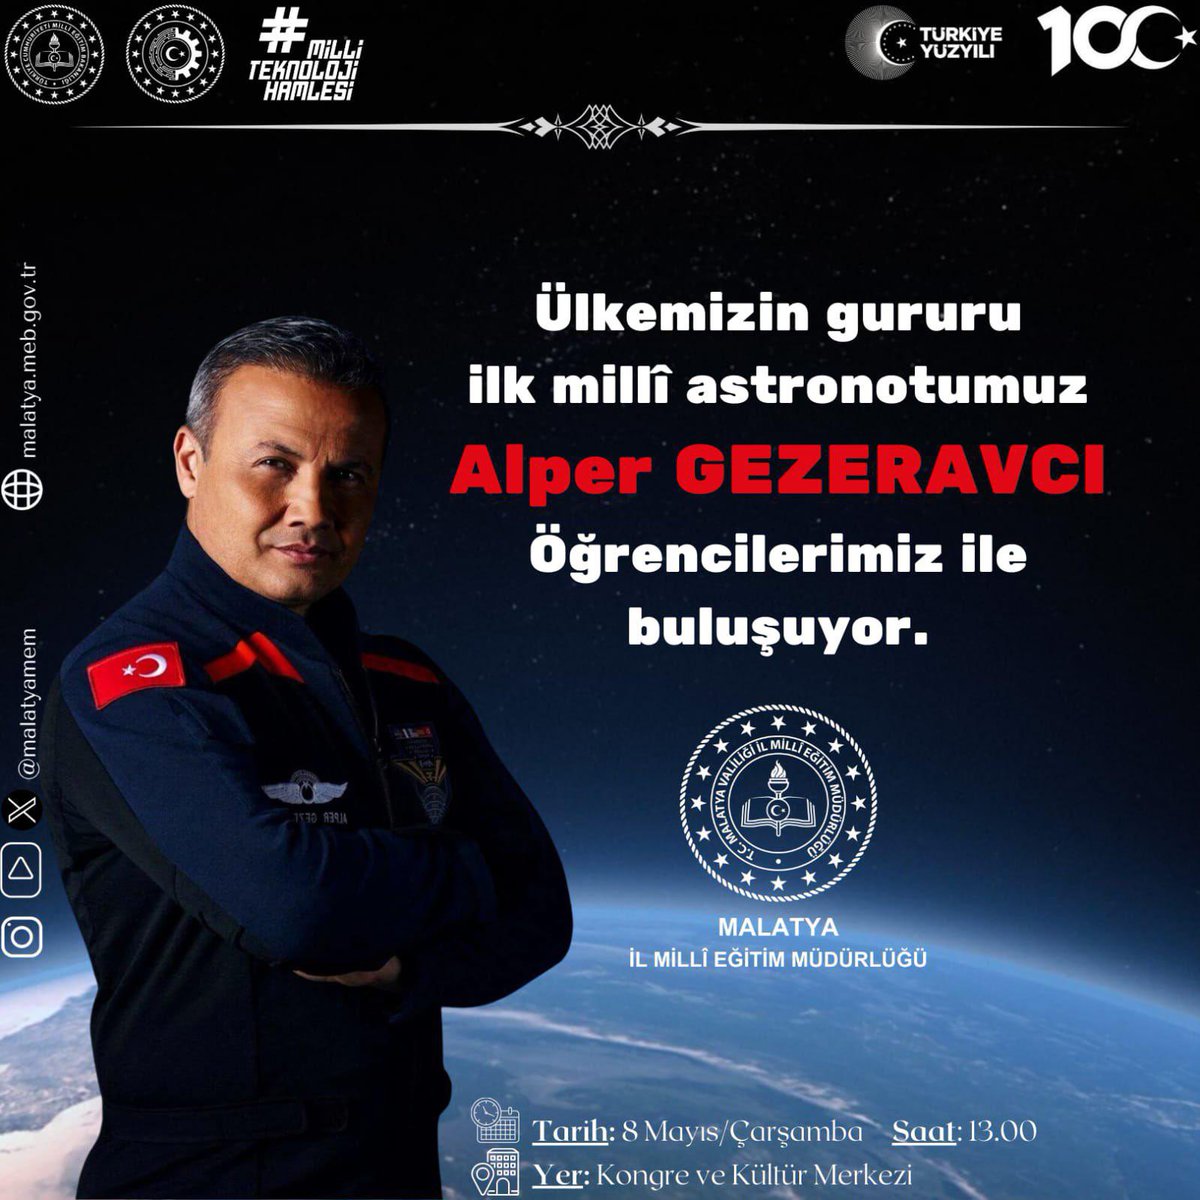 Malatyalı gençler bu fırsatı kaçırmayın! 

🧑‍🚀 Türkiye’nin ilk astronotu Alper Gezeravcı, Türkiye’nin Uzay Misyonu’nu gençlere anlatacak. 🚀 

Ankara’da Genel Kurul çalışmalarımızdan dolayı aranızda olamayacağım ama bu büyük ve önemli etkinliği sakın kaçırmayın! #MilliUzayProgramı…